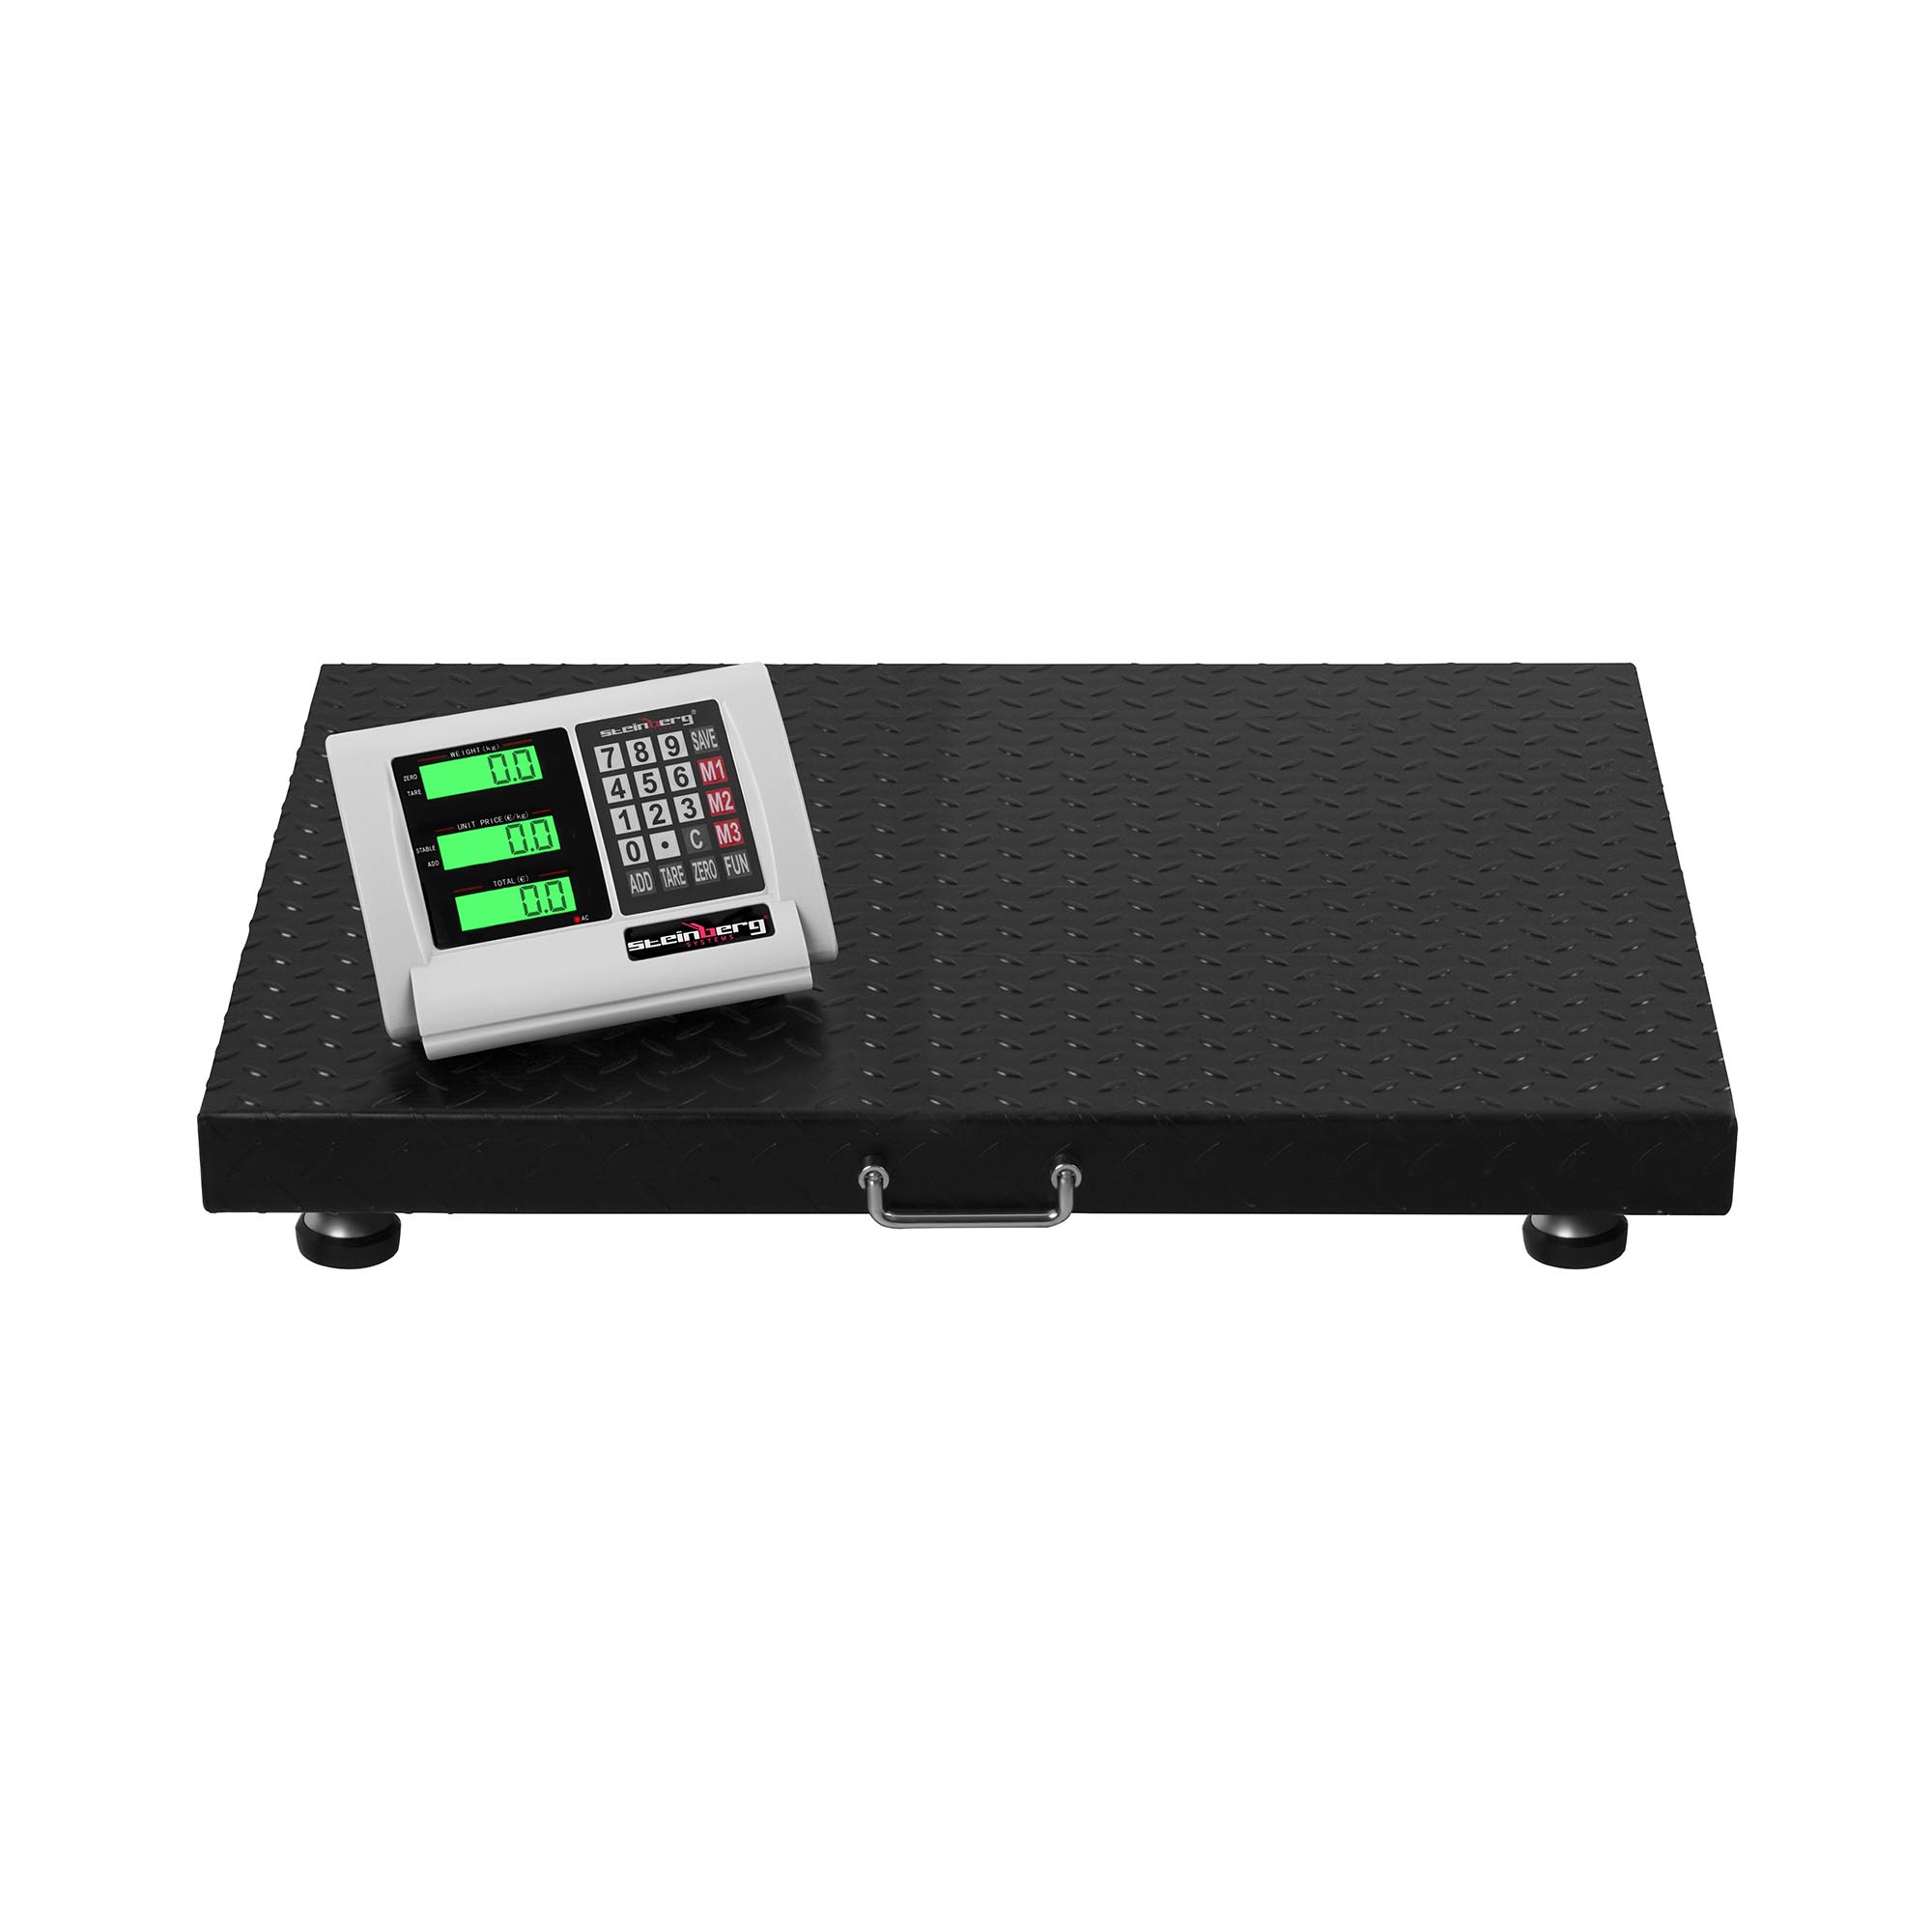 Podlahová váha 1 t / 200 g LCD bezdrátová - Podlahové váhy Steinberg Systems